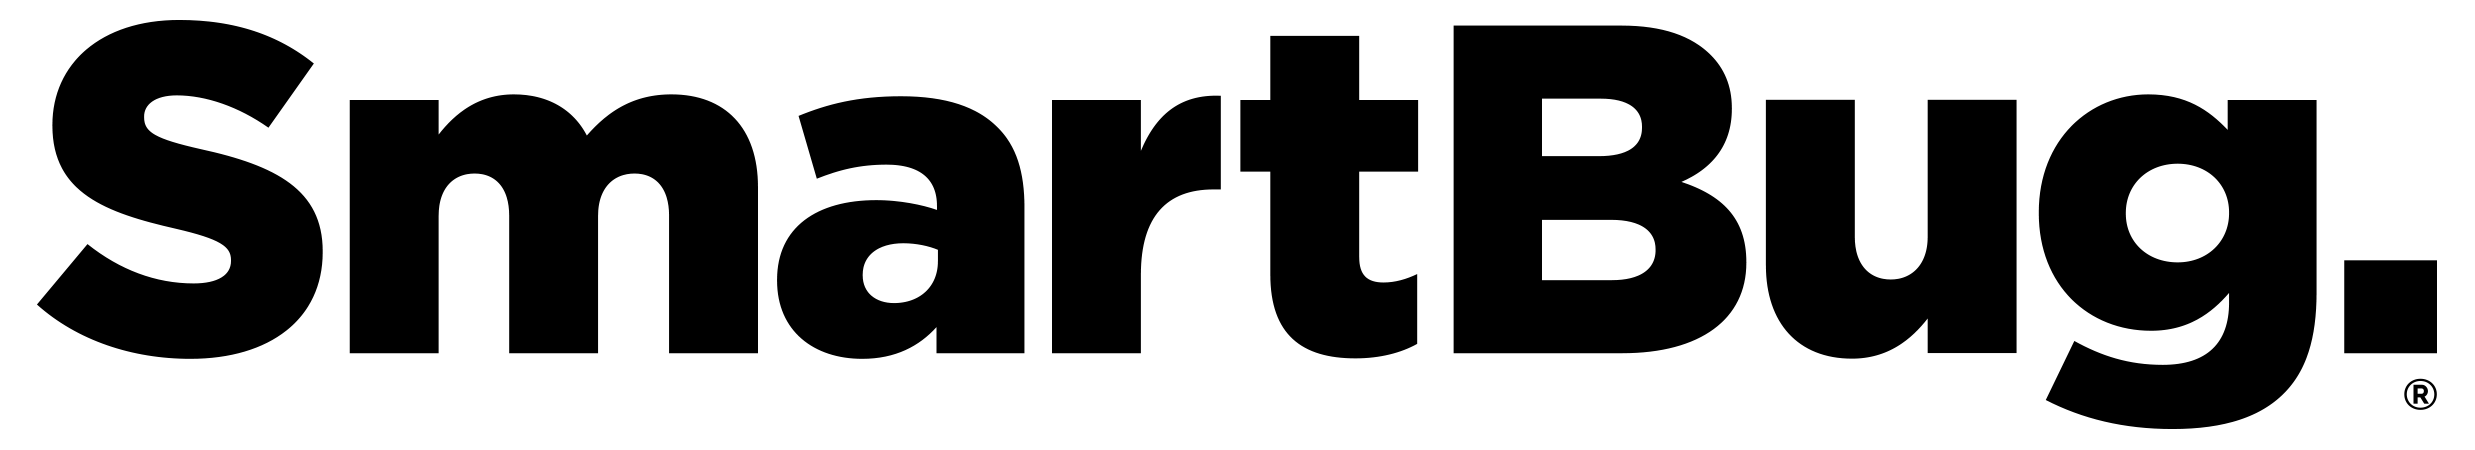 SmartBug_Logo_Final_Black_Large_Registered